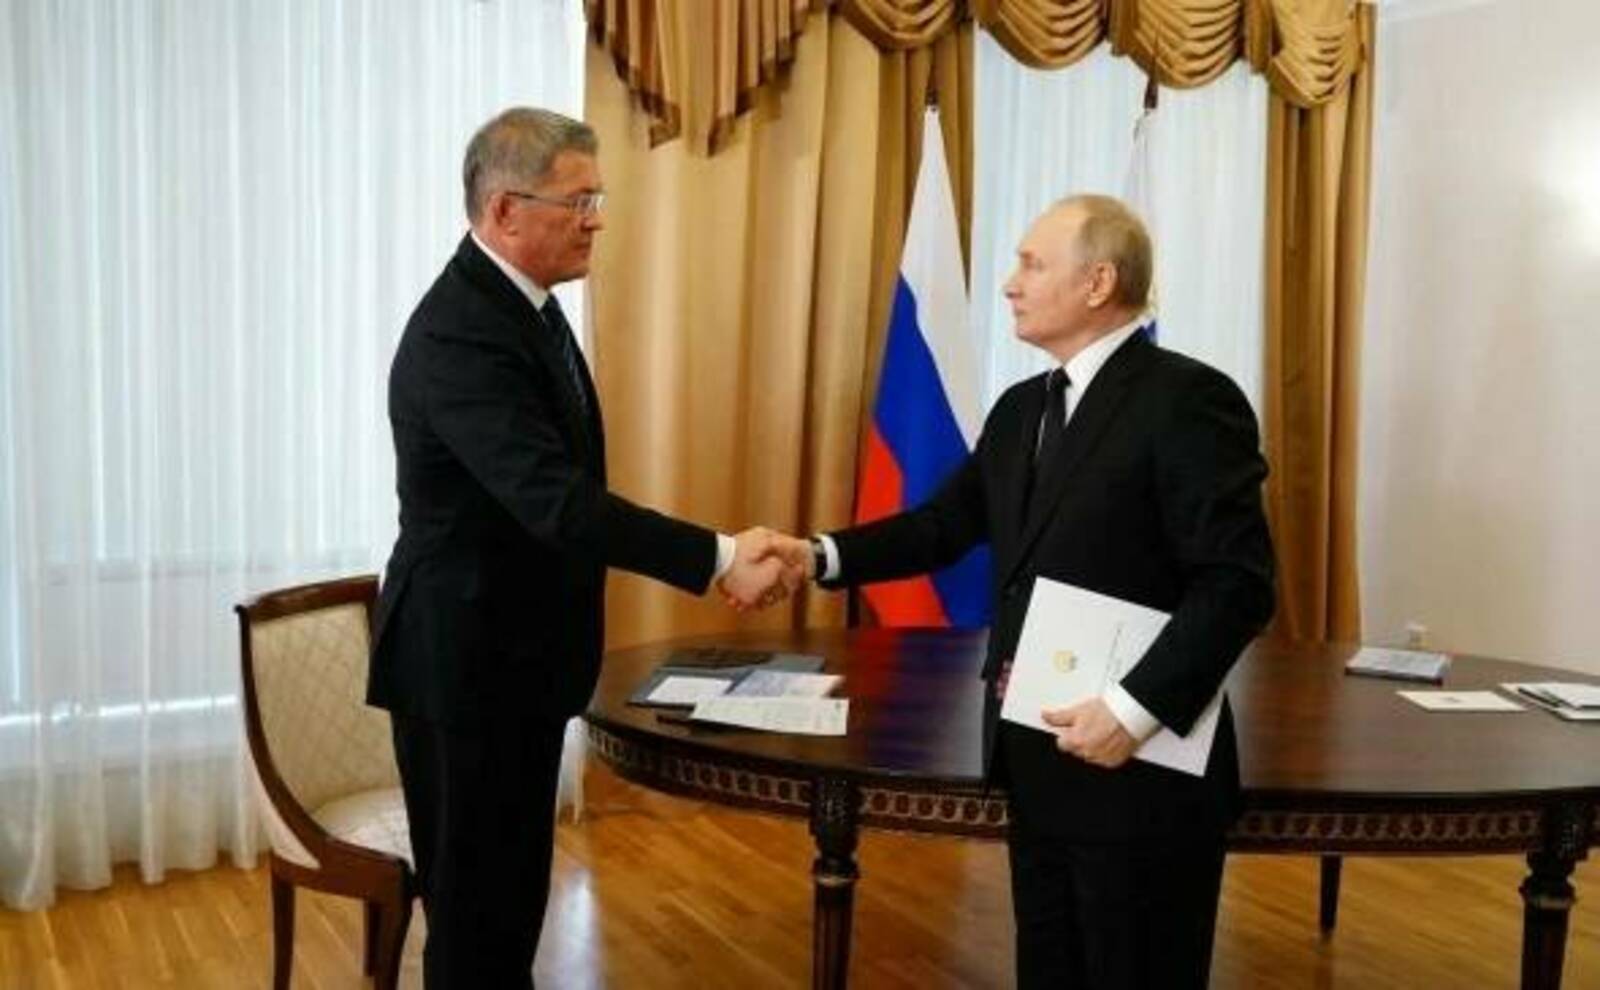 Федерaльные политологи прокомментировали визит Владимира Путина в Башкирию